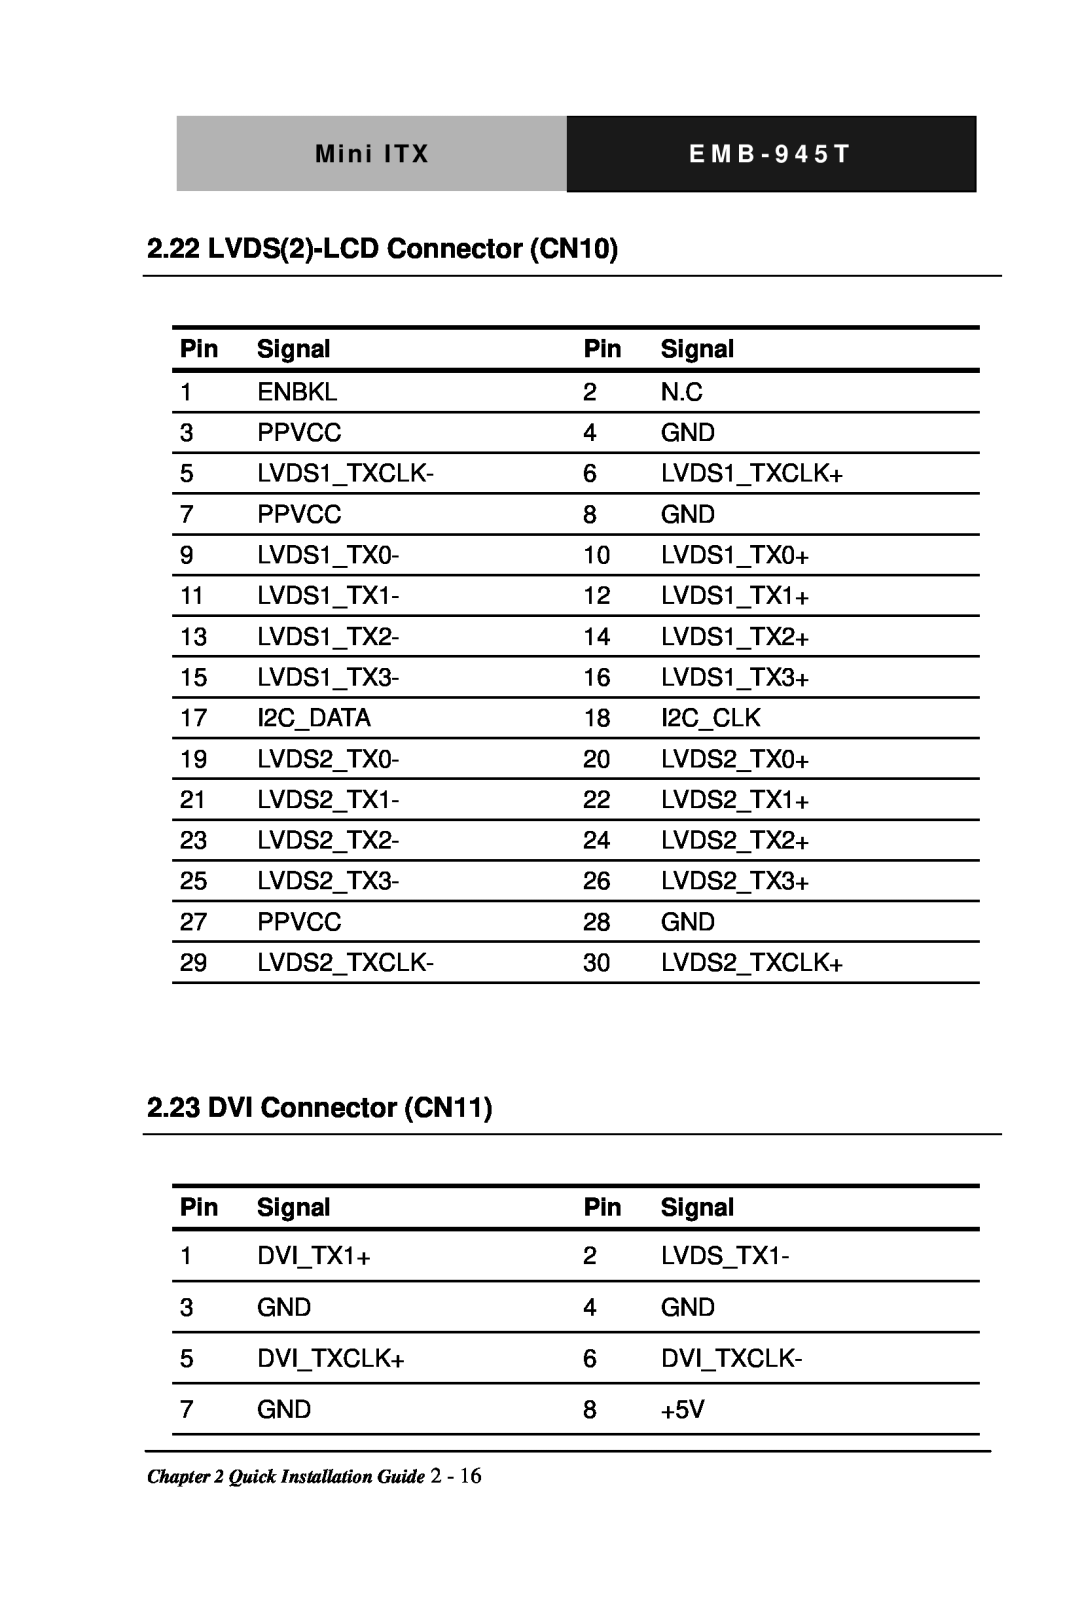 Intel EMB-945T manual LVDS2-LCDConnector CN10, DVI Connector CN11, Mini ITX, E M B - 9 4 5 T, Signal 